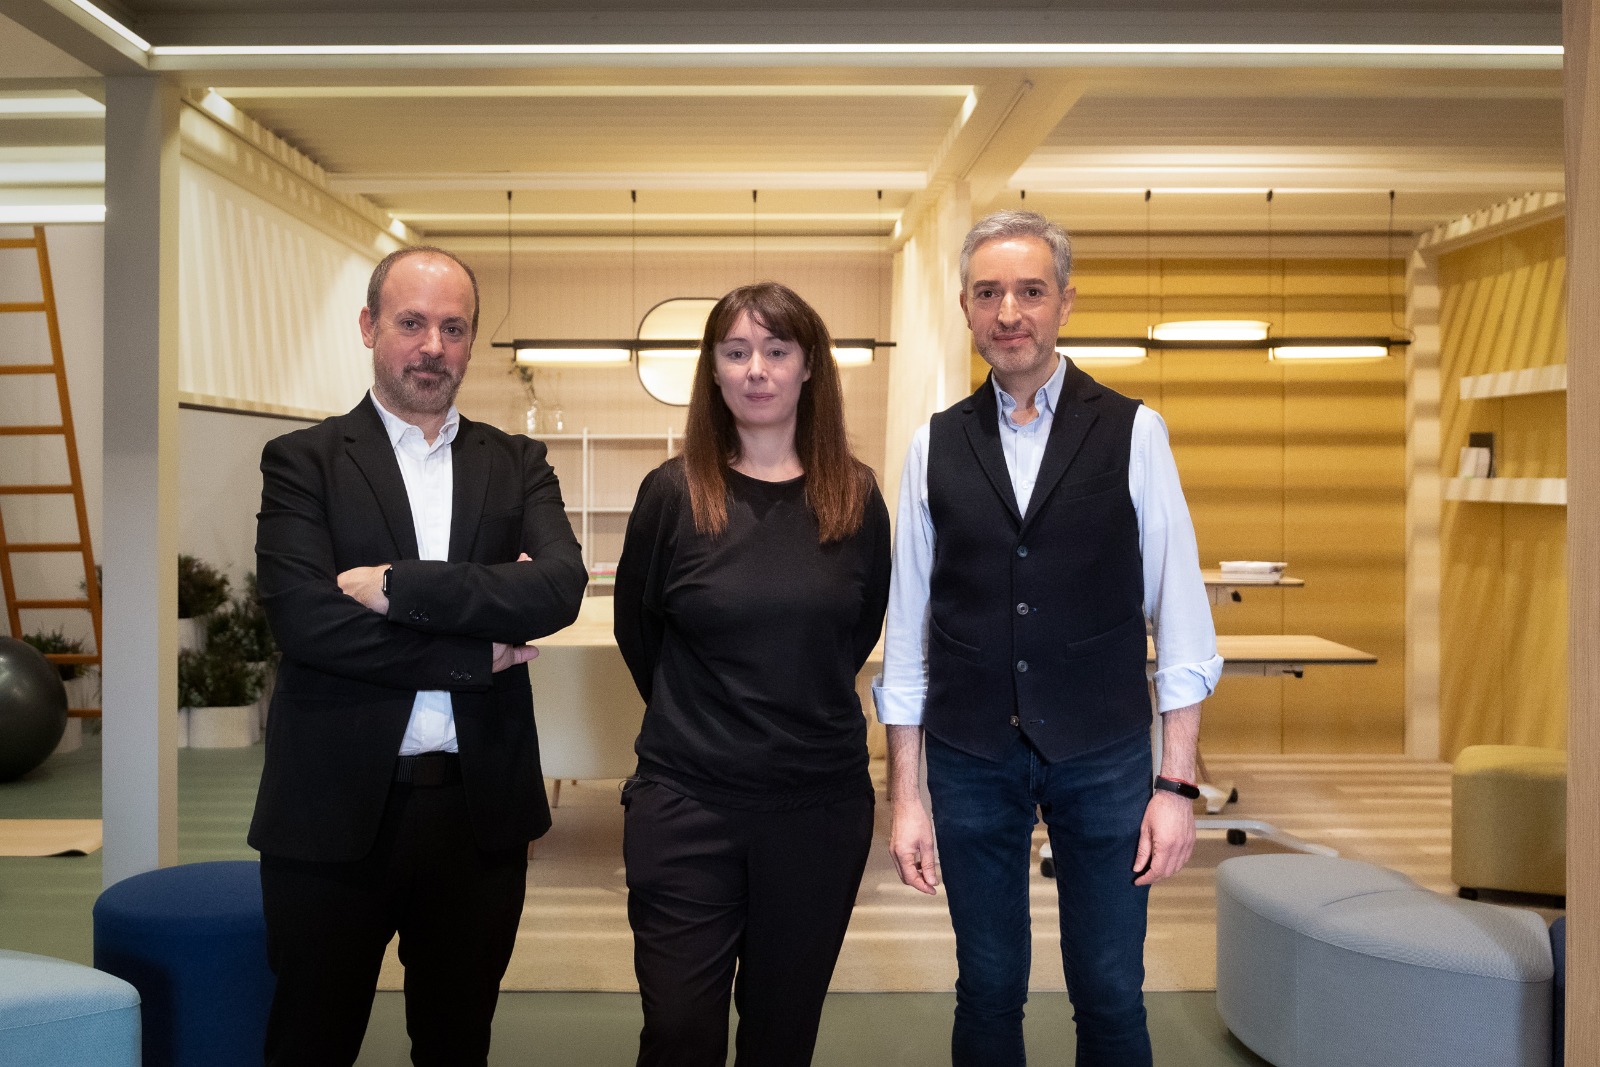  Xavi Calvo, director de World Design Capital Valencia 2022, Tachy Mora, comisaria de la muestra y José Luis Pérez, director del CCCC